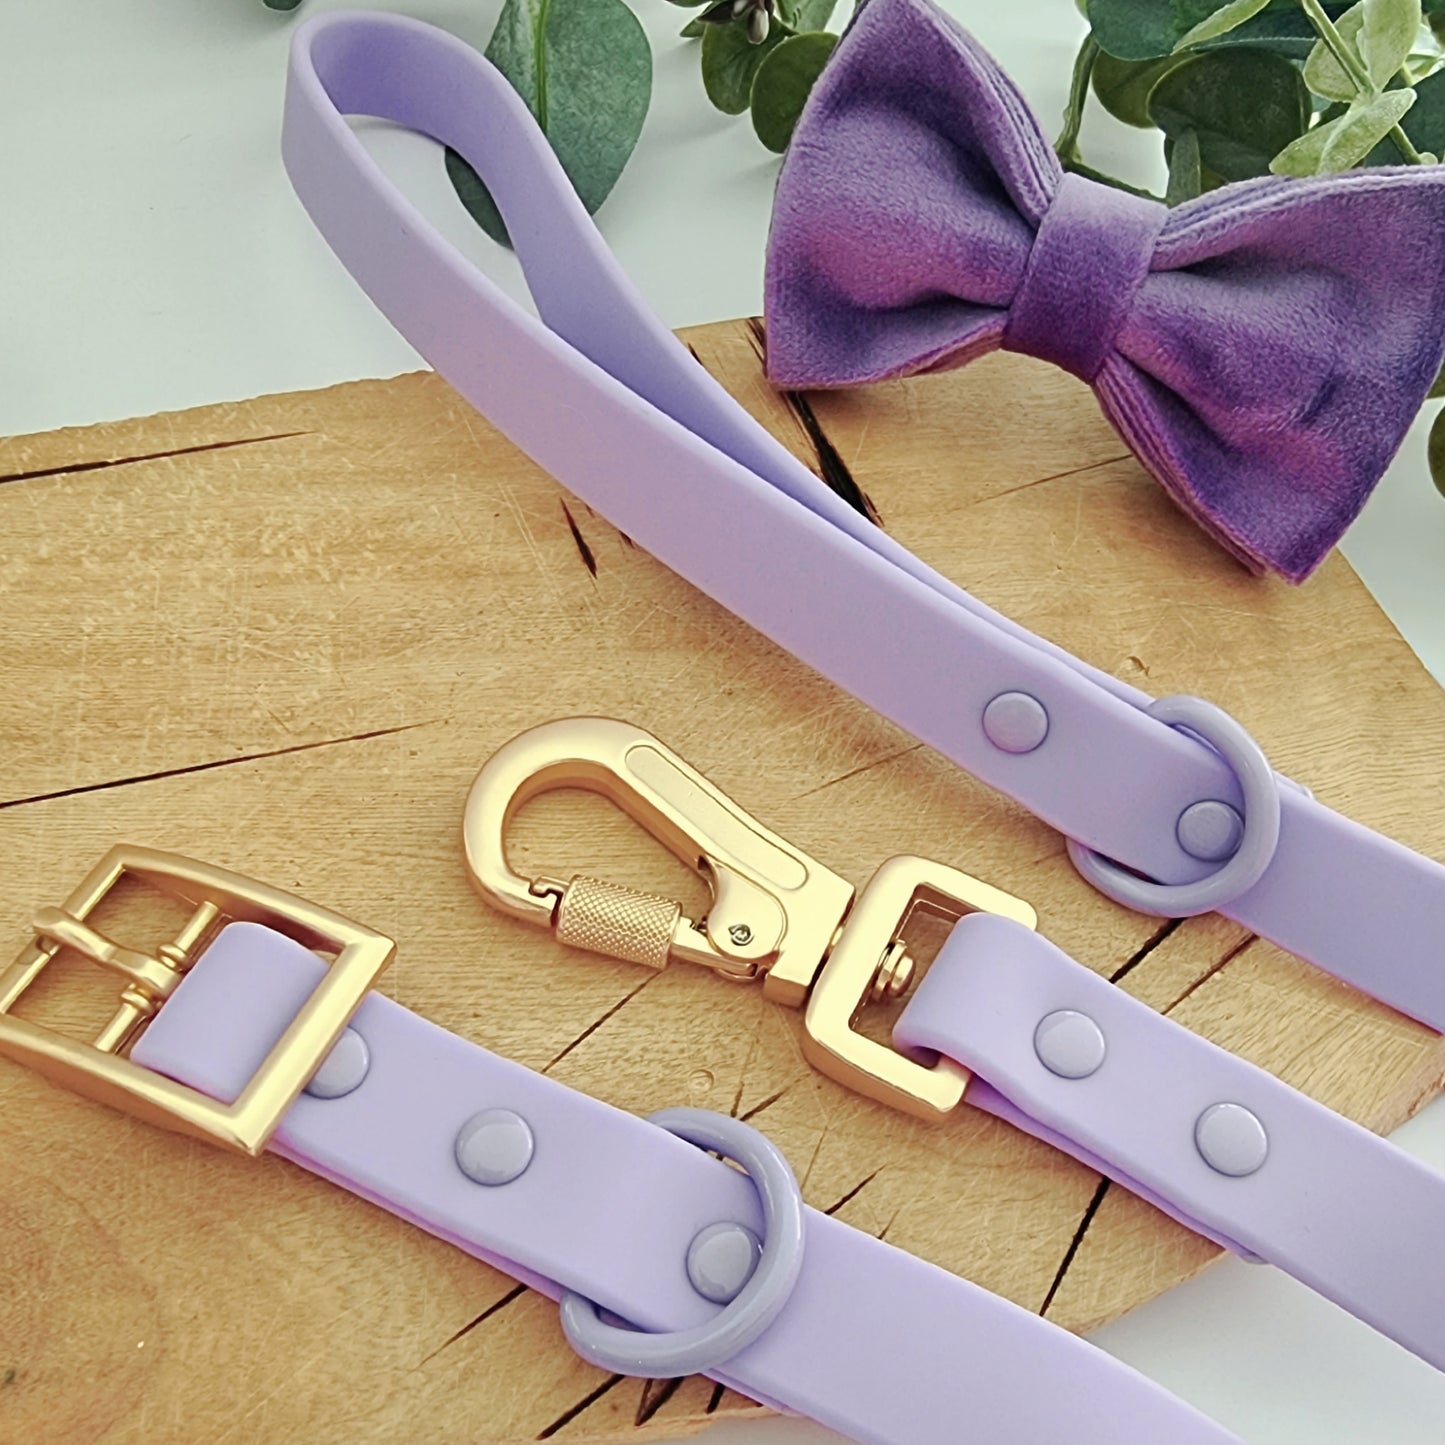 Purple velvet dog bow tie